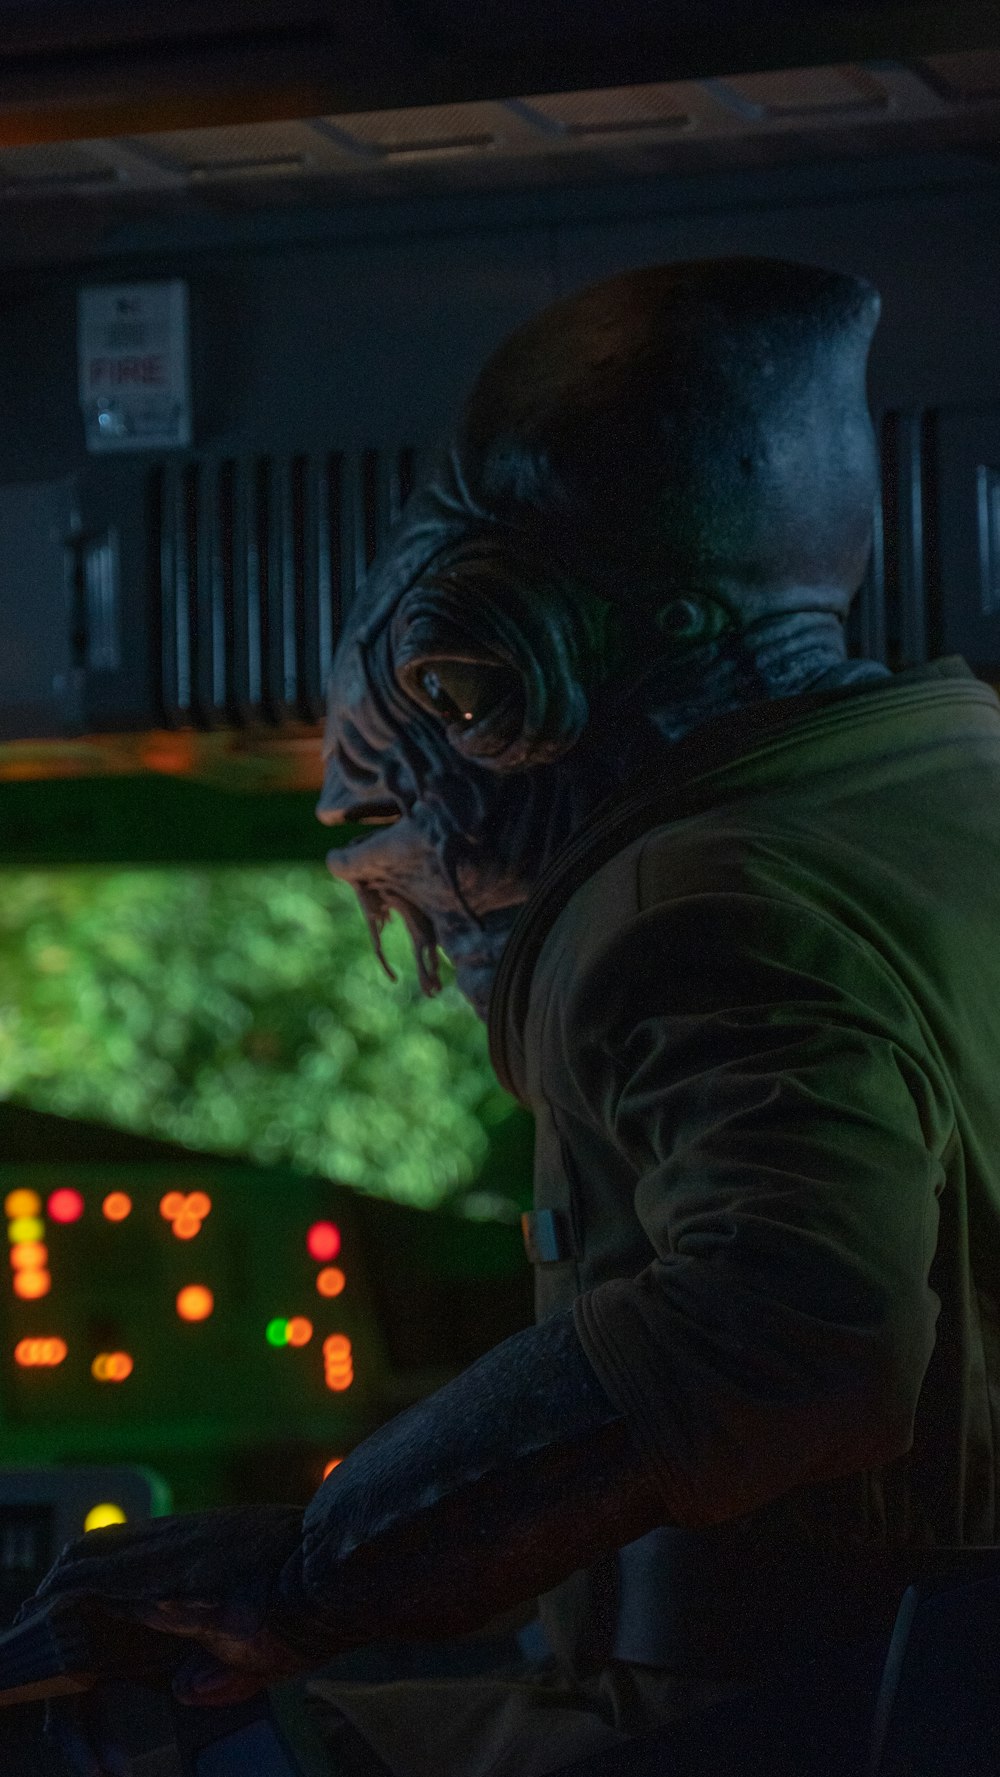 Un uomo in una stazione spaziale che guarda lo schermo di un computer